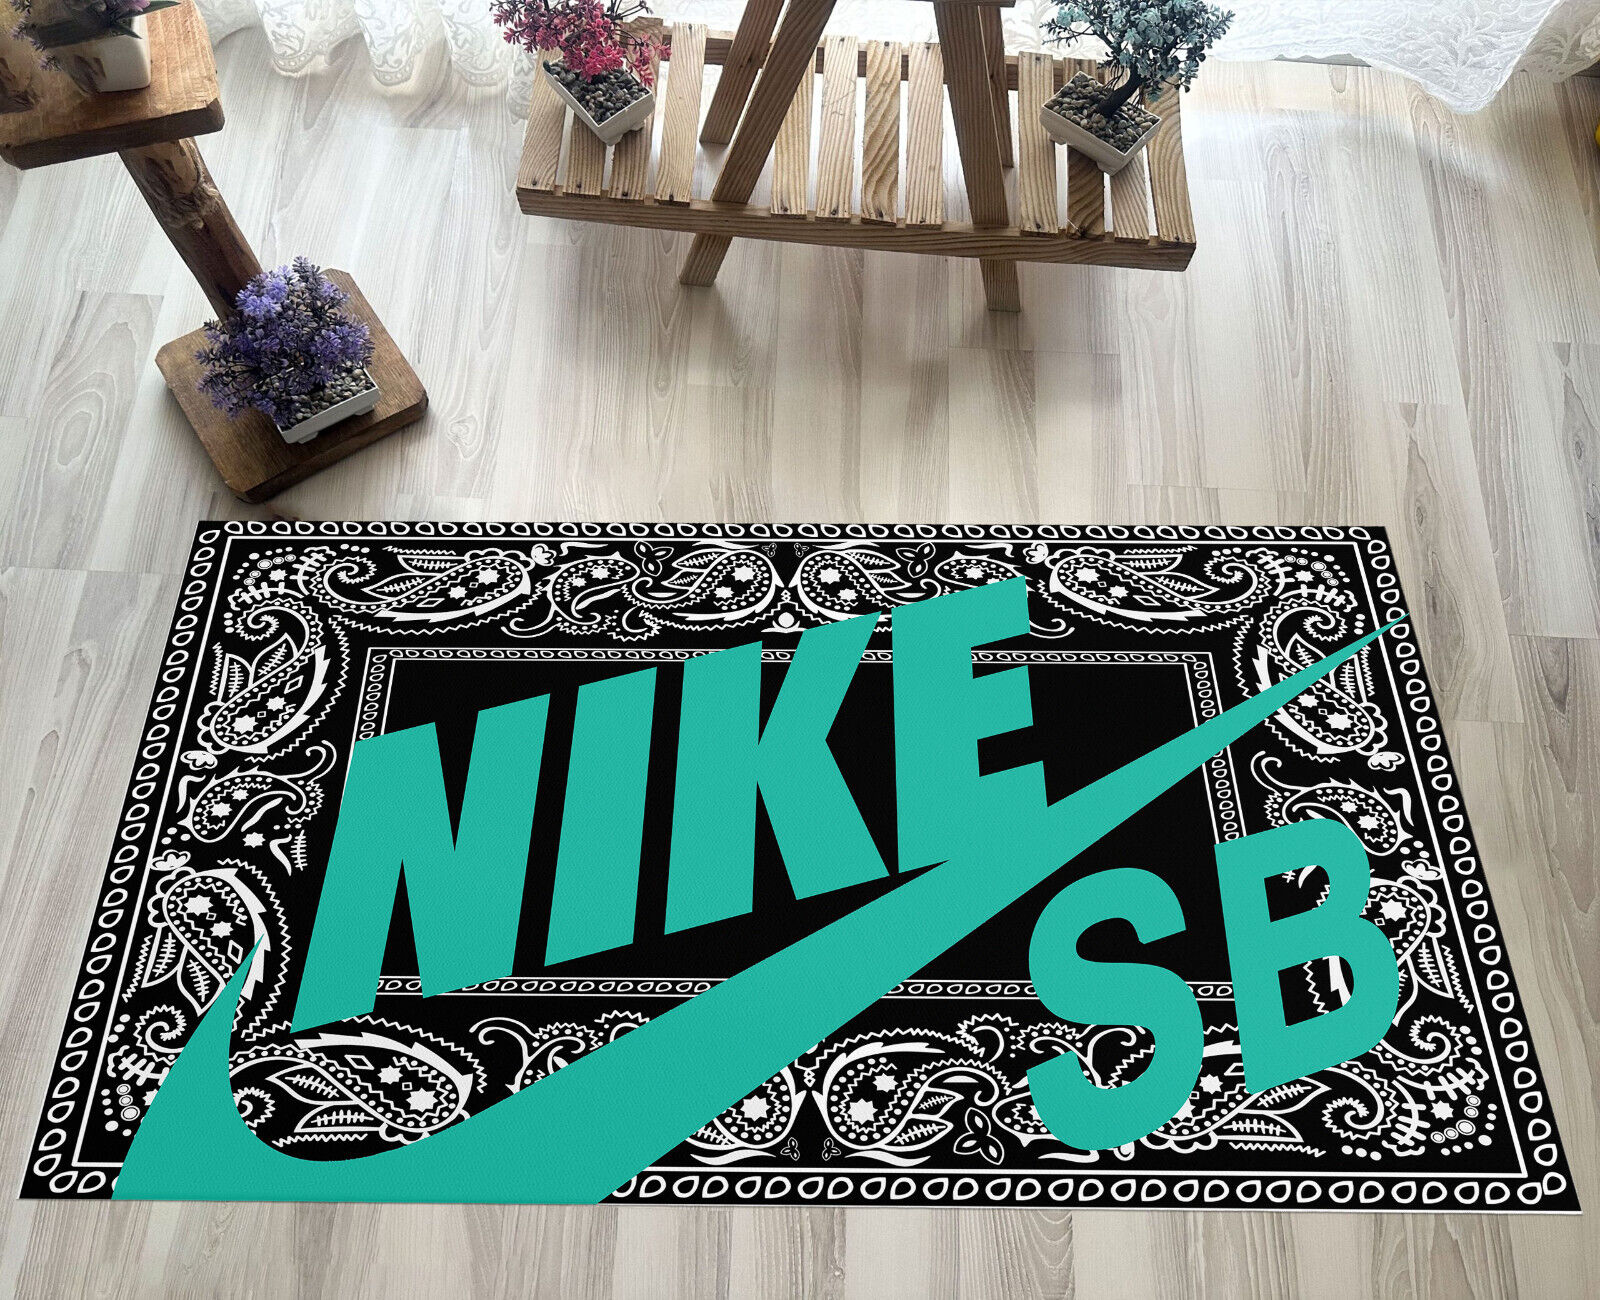 Shoebox rug, sneakerhead rug, sneaker room rug, sneaker rug, sneaker decor